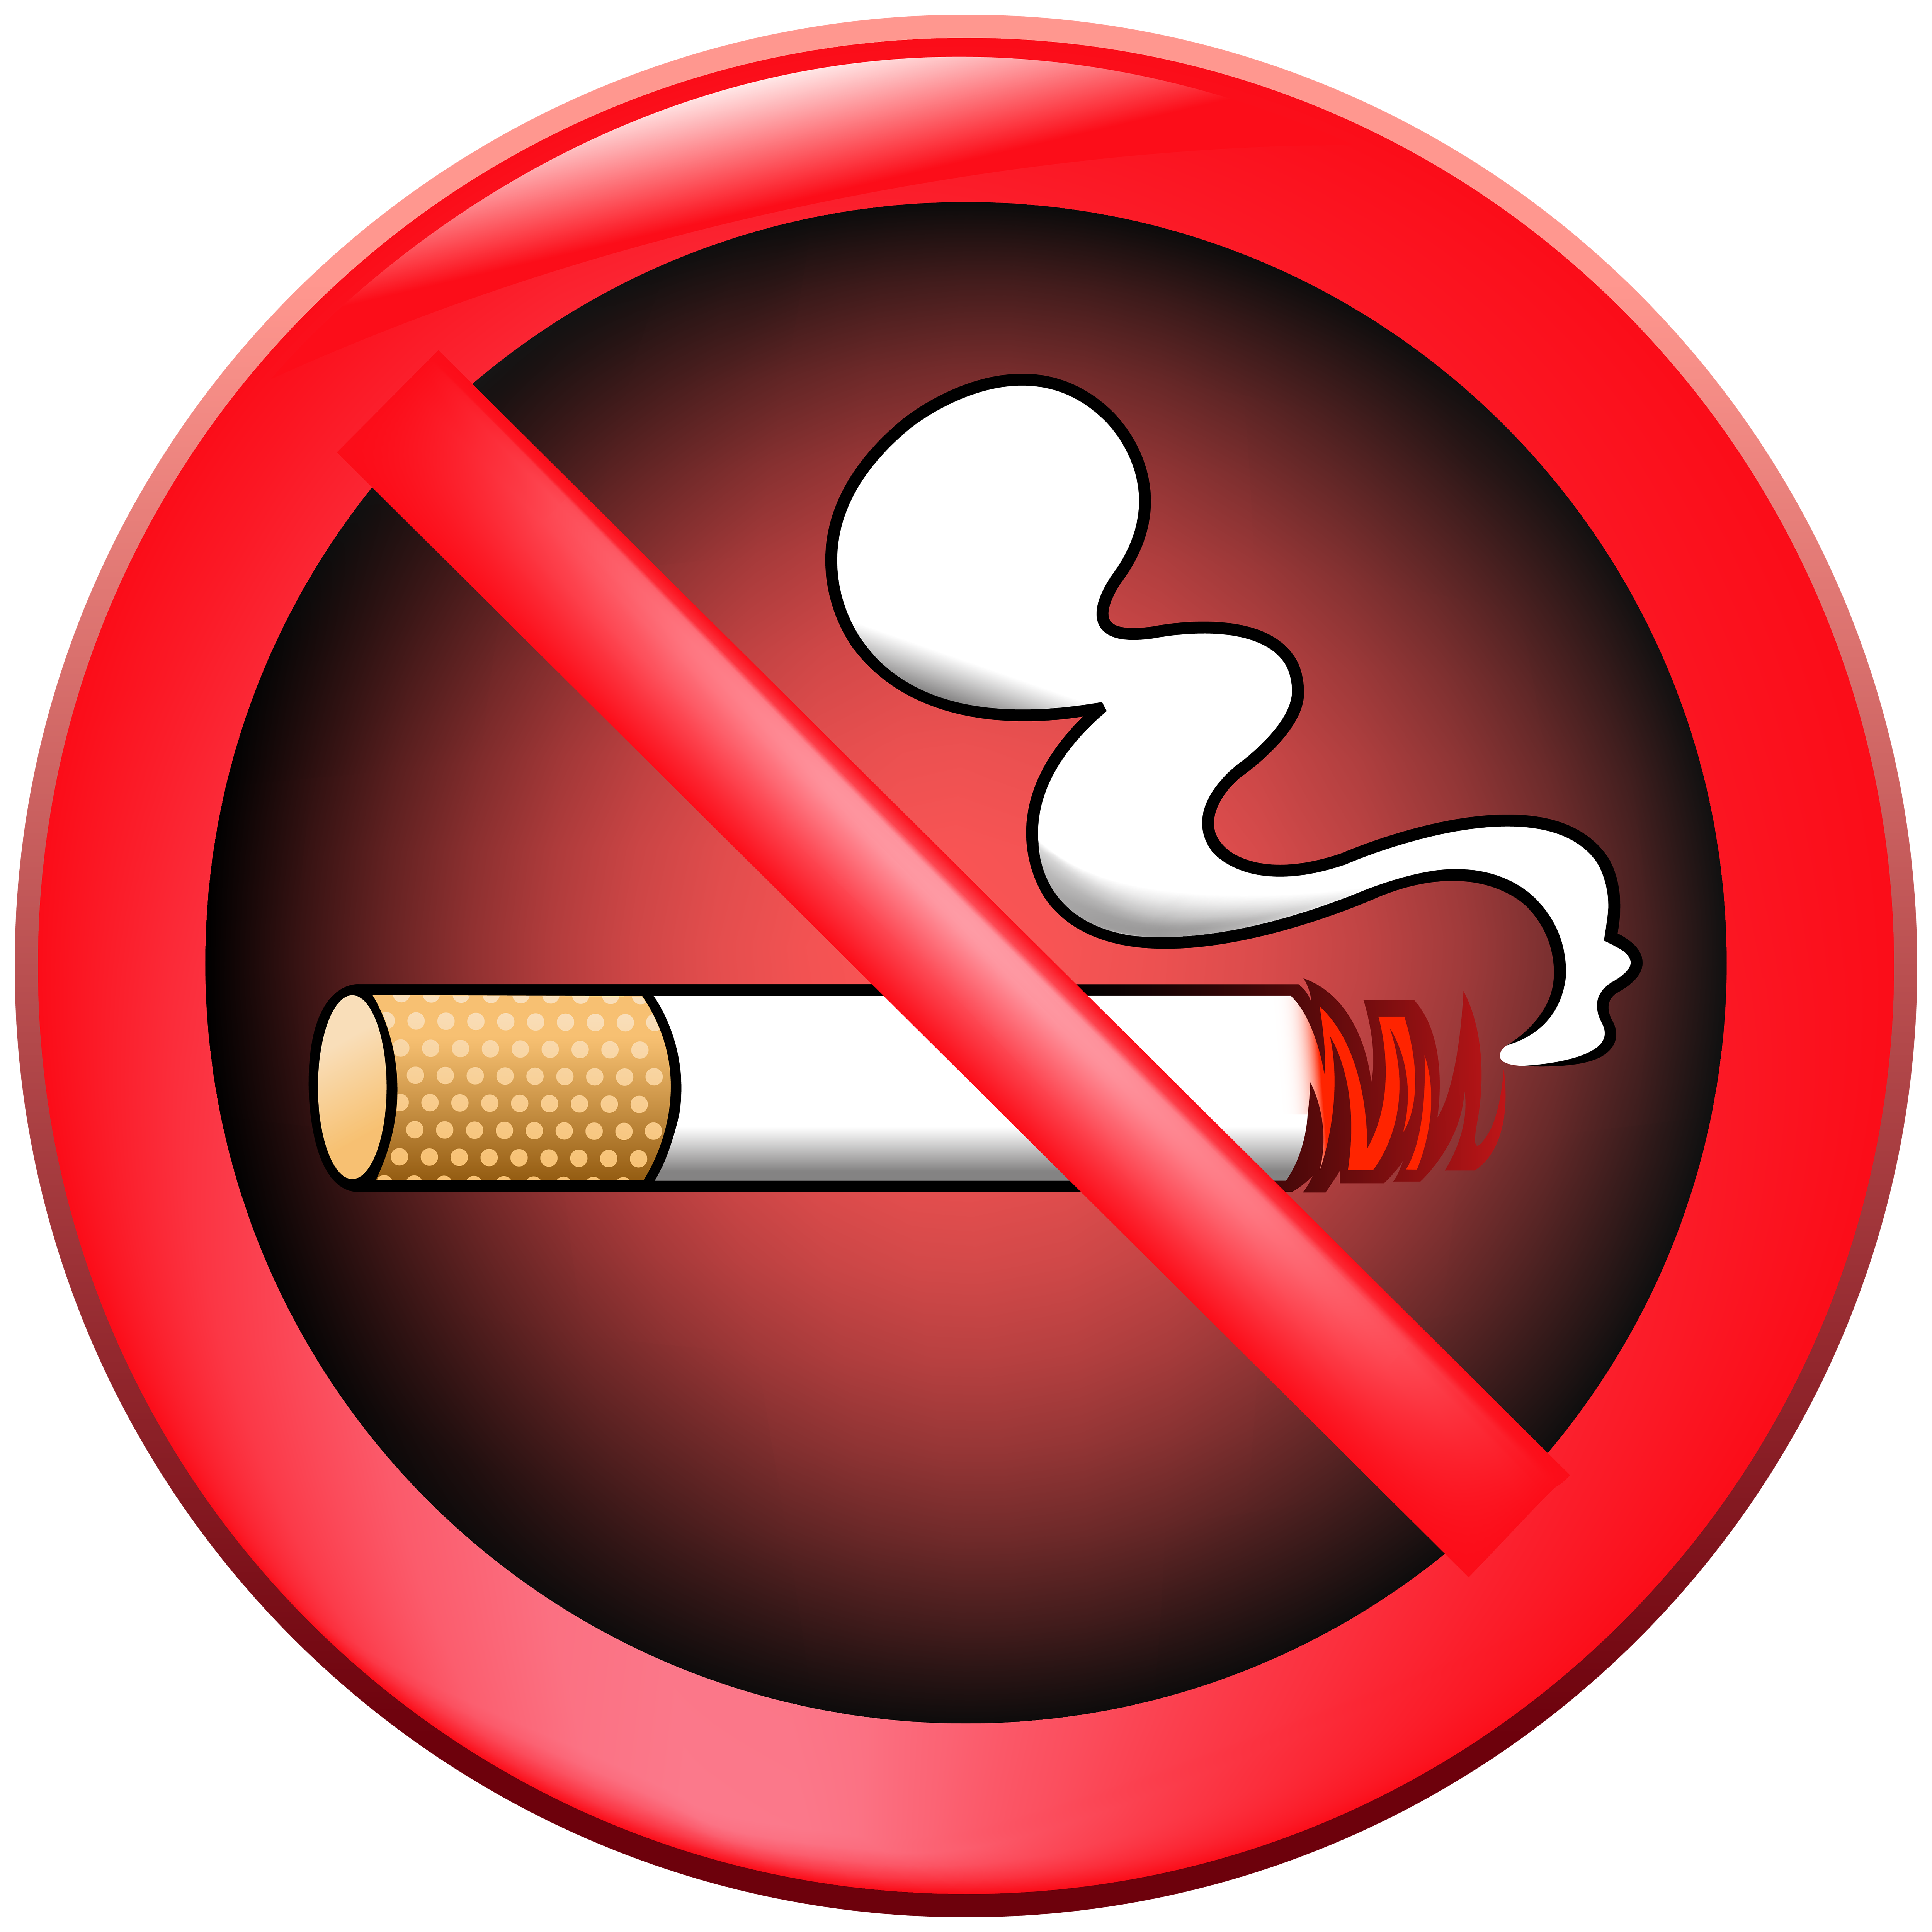 Smoking clipart smoking cessation, Smoking smoking cessation